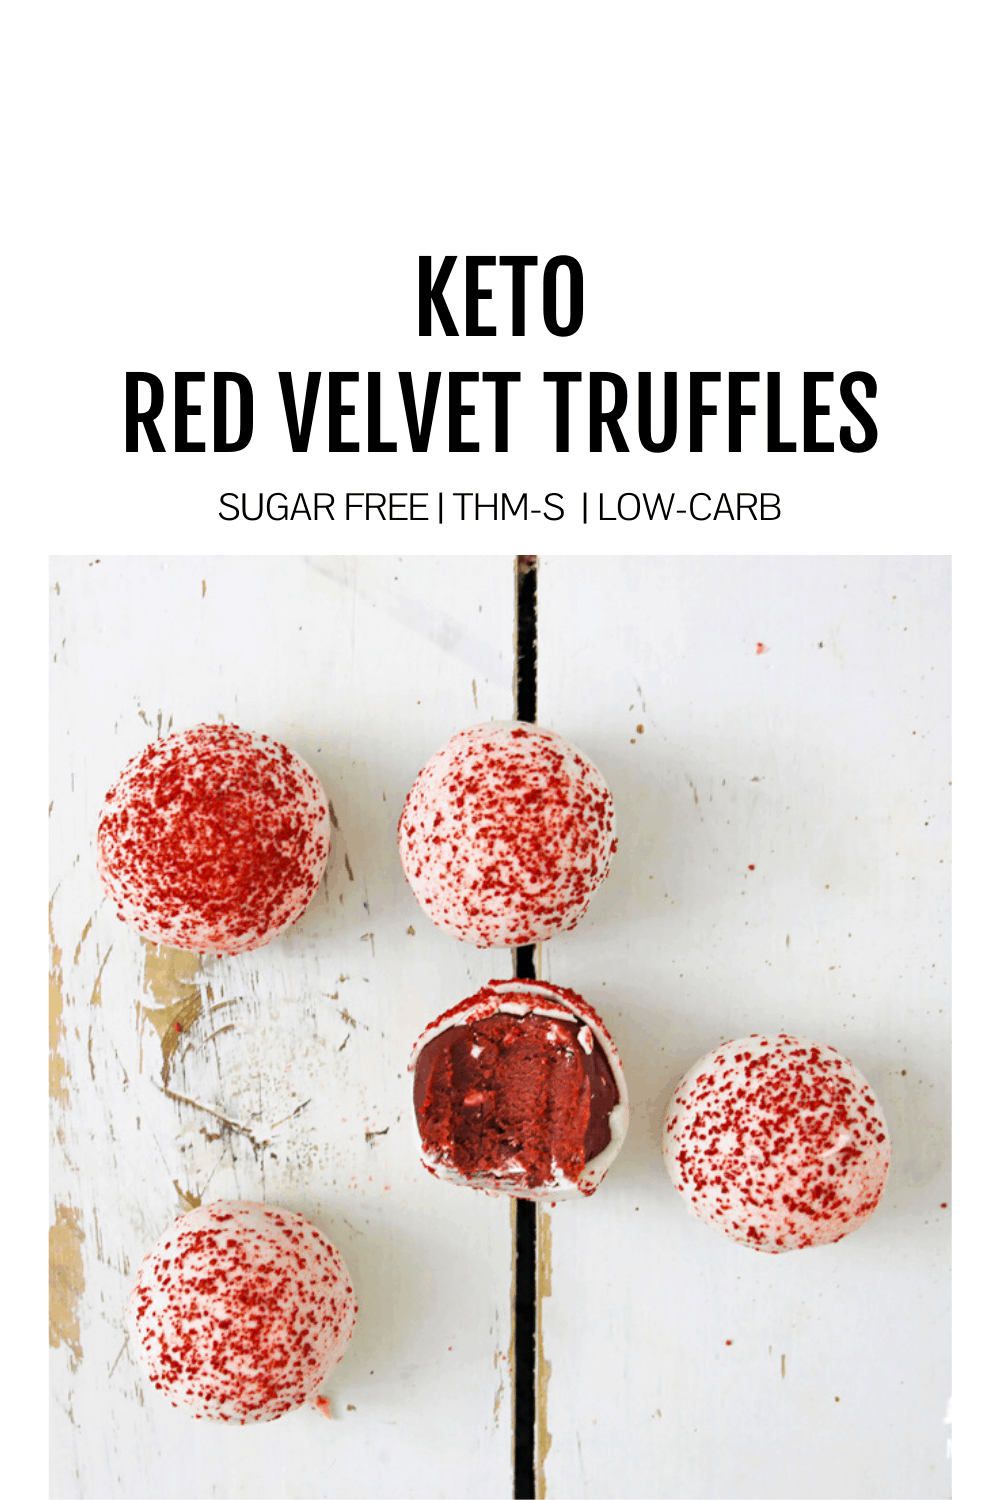 KEto Red Velvet Truffle Image